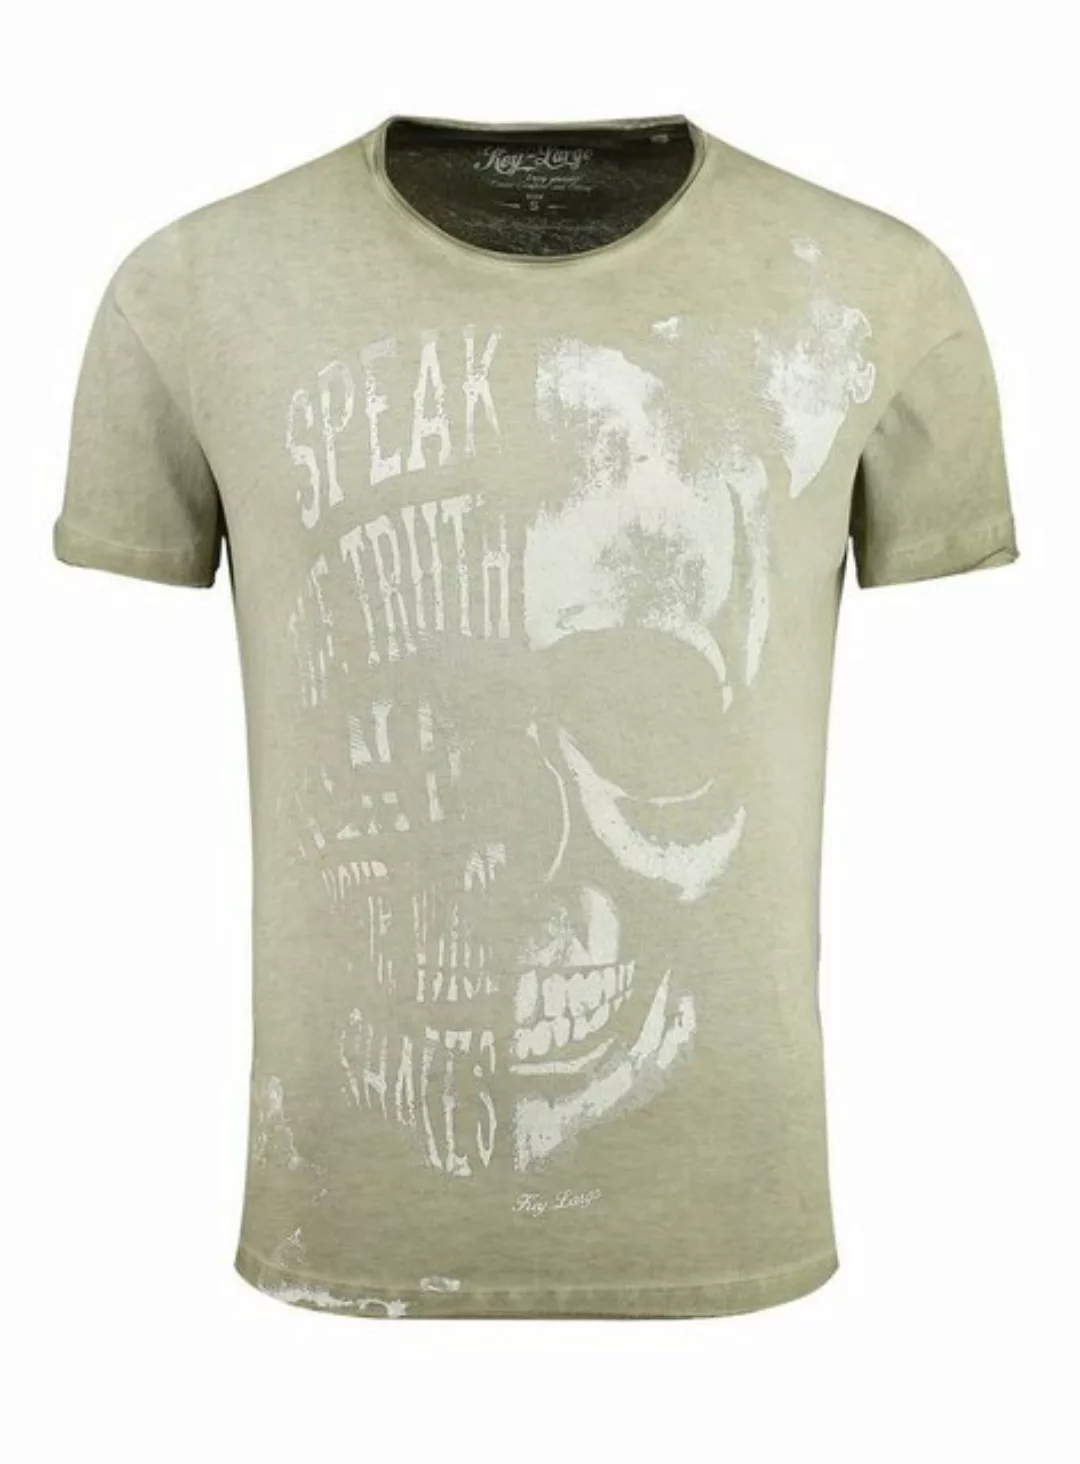 Key Largo T-Shirt T-Shirt Speaker Skull Totenkopf Print Motiv vintage Look günstig online kaufen